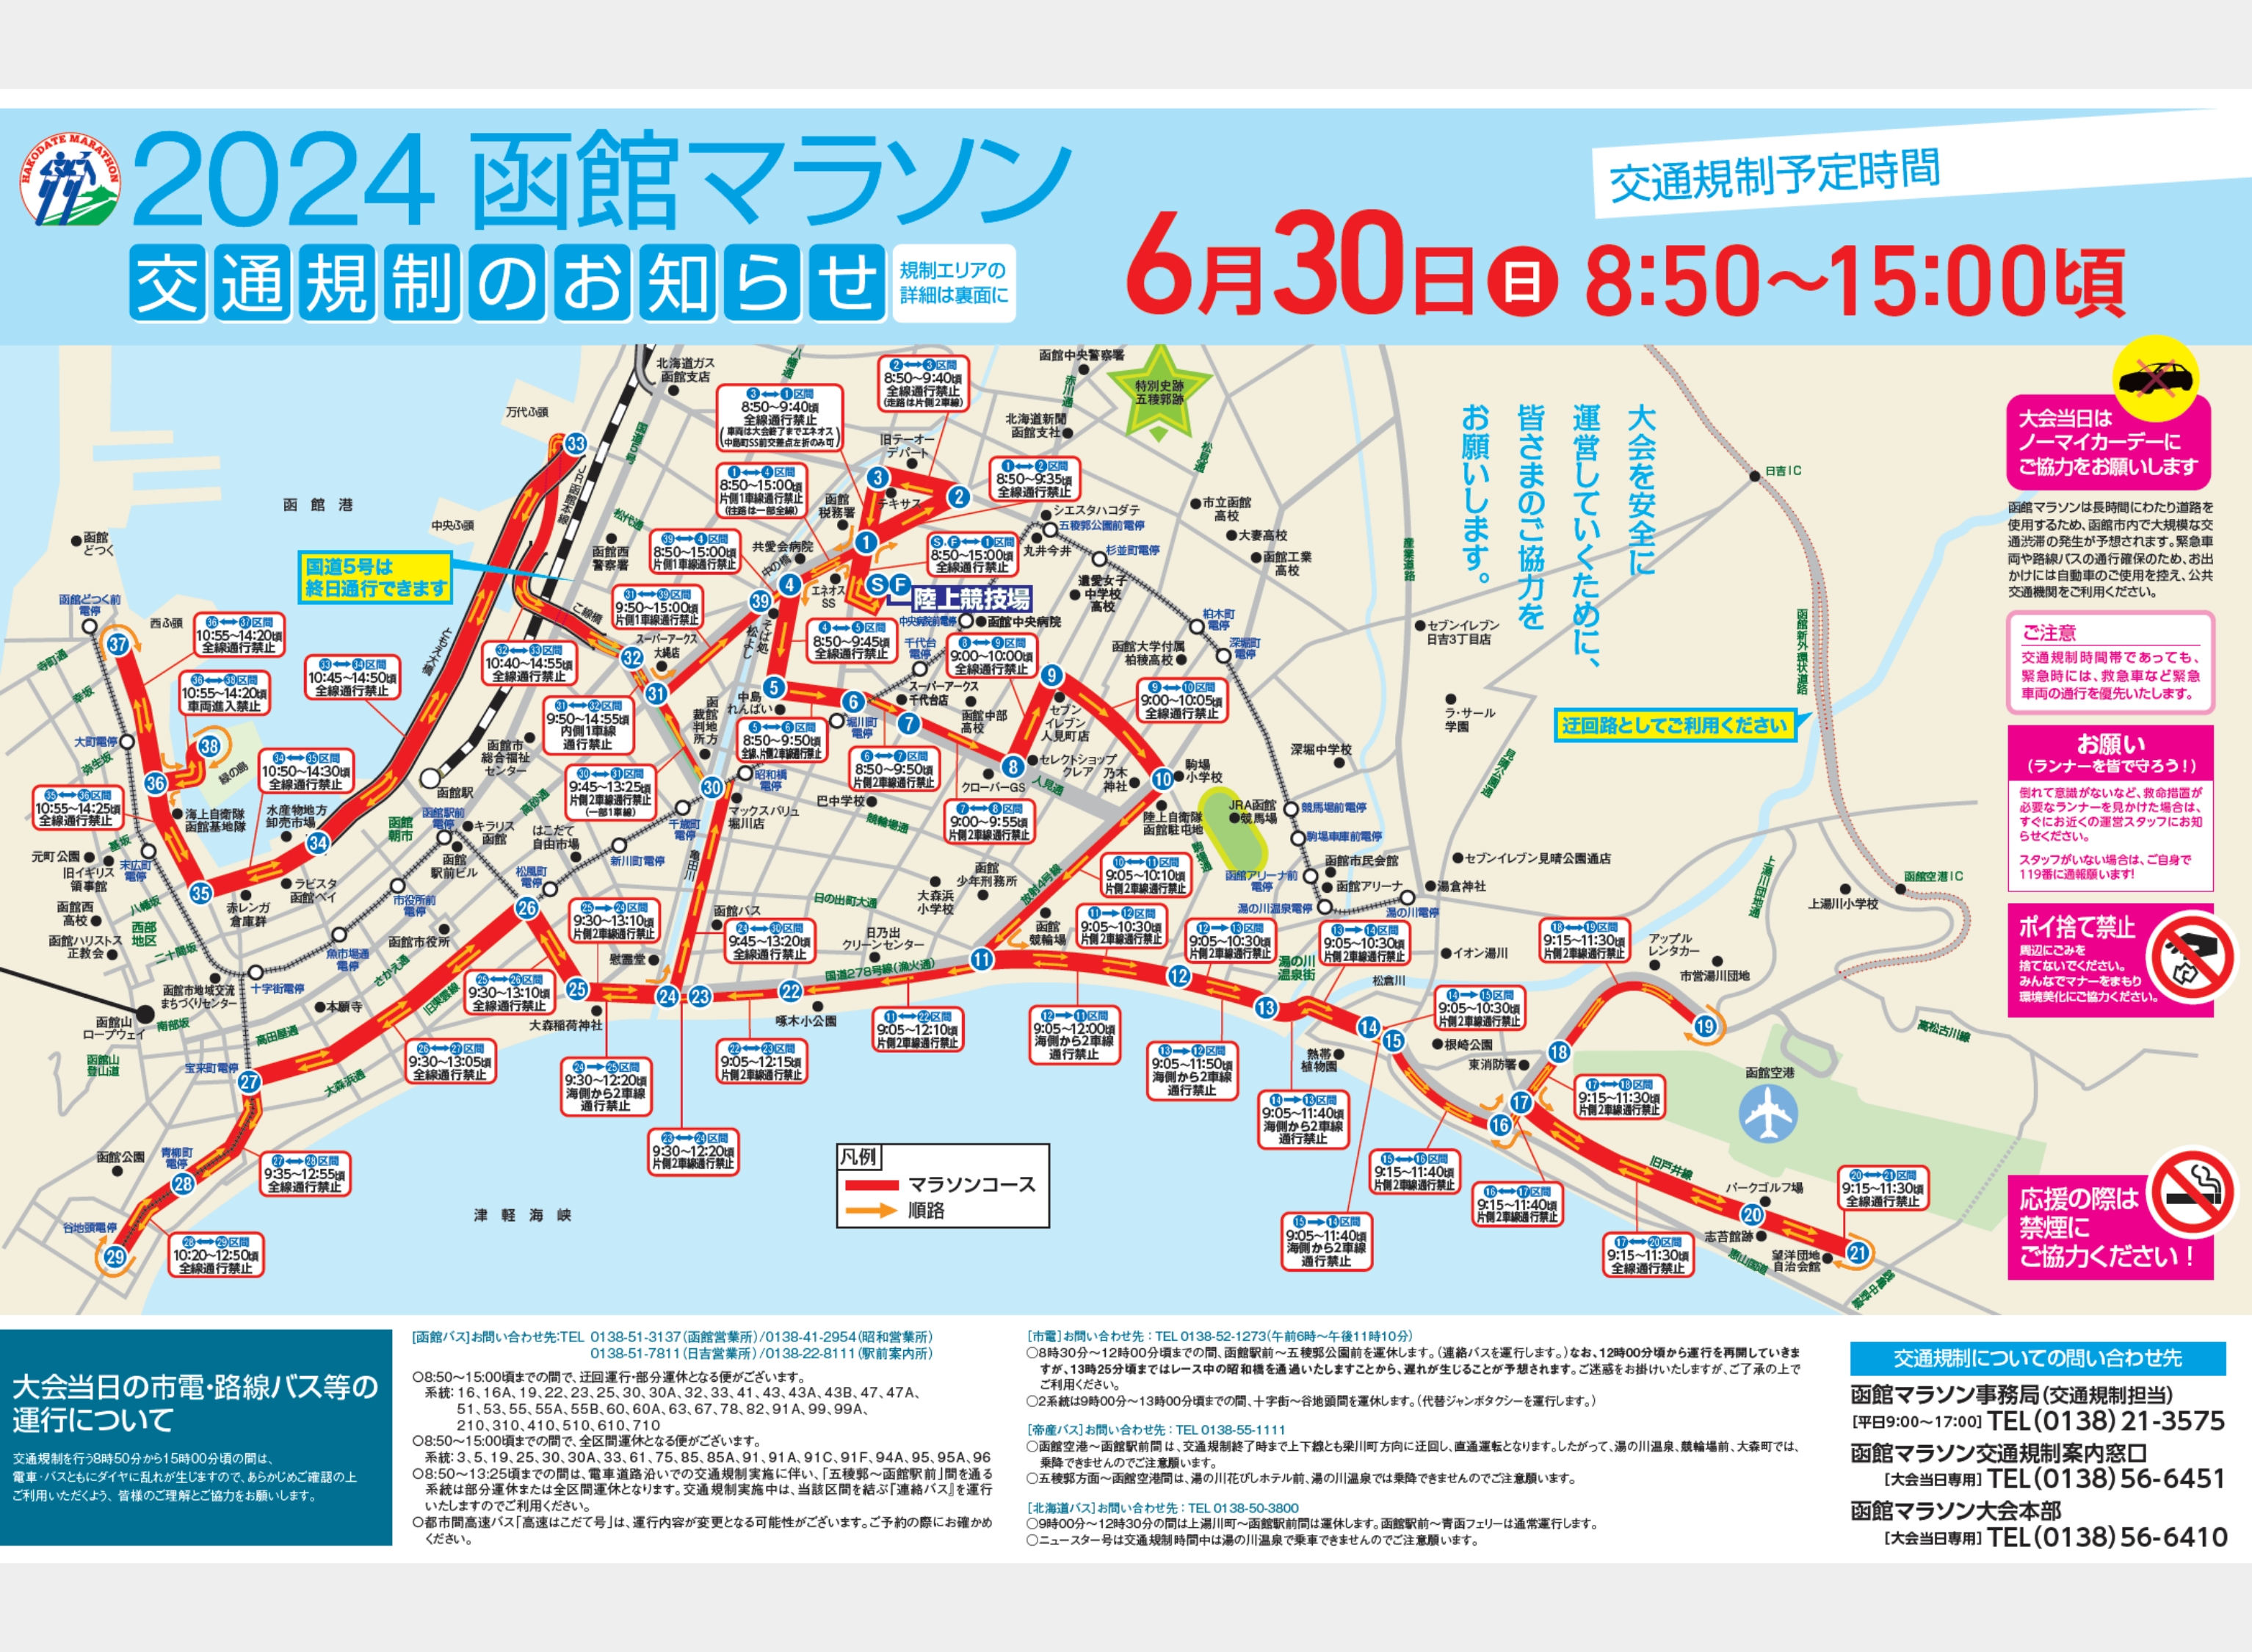 2024函館マラソン交通規制のお知らせ